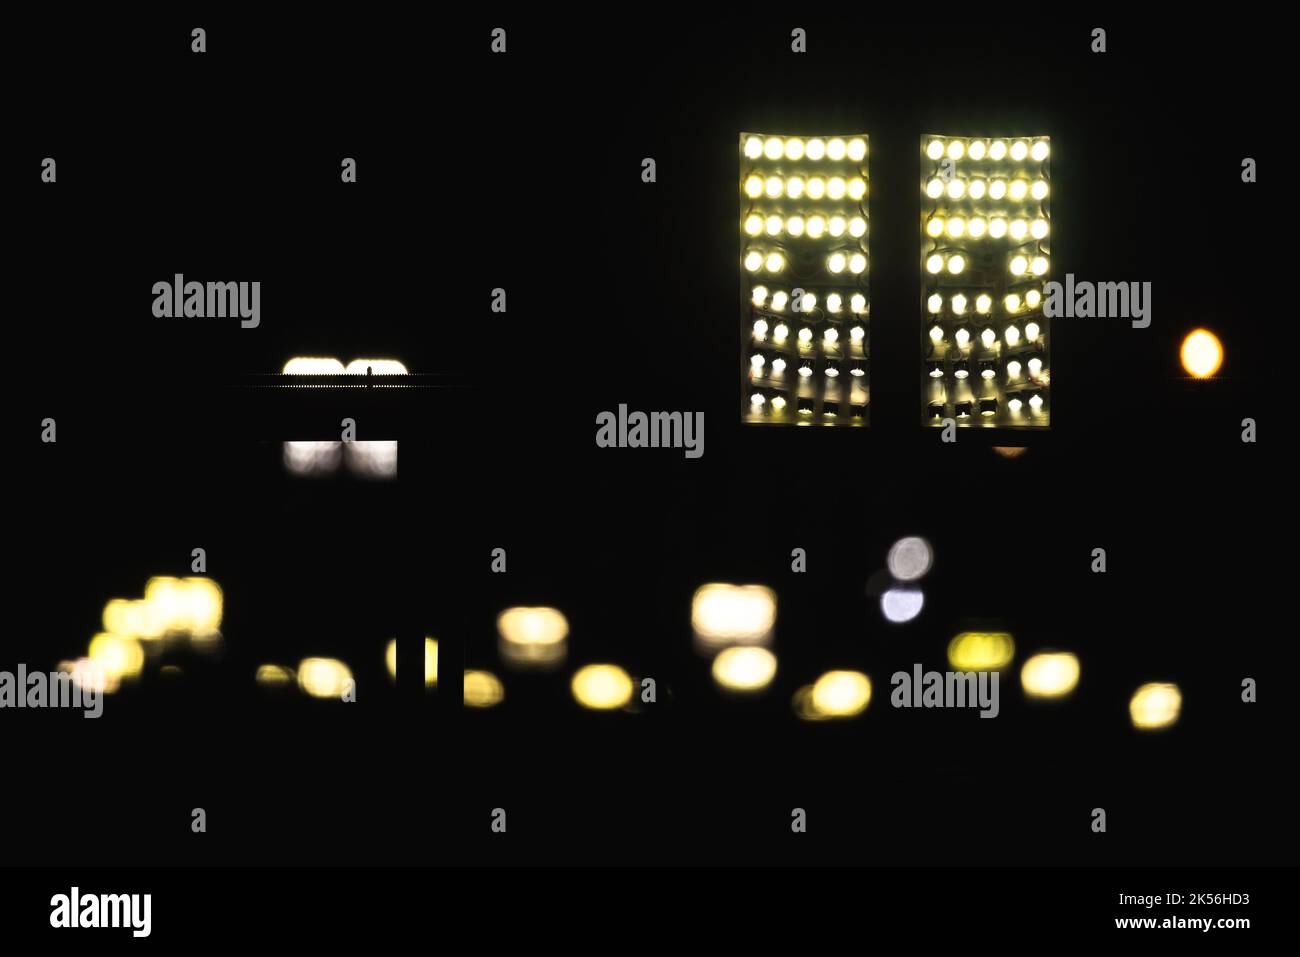 Luci stradali a LED sfocate su sfondo scuro. Foto astratta della notte urbana Foto Stock